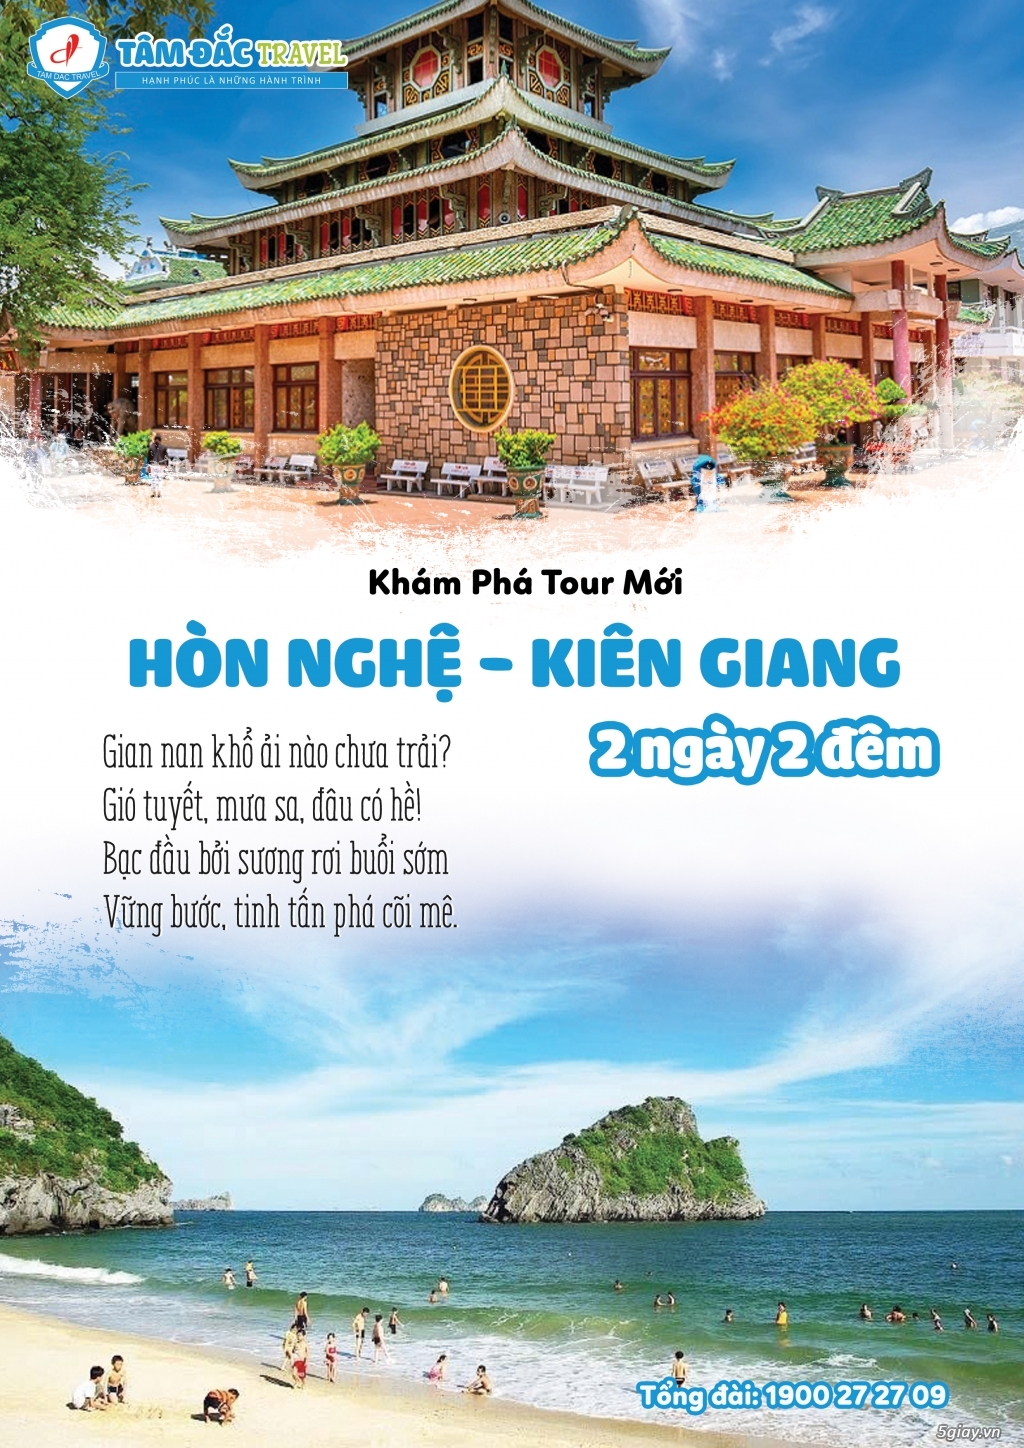 Chương trình du lịch Hòn Nghệ - Kiên Giang